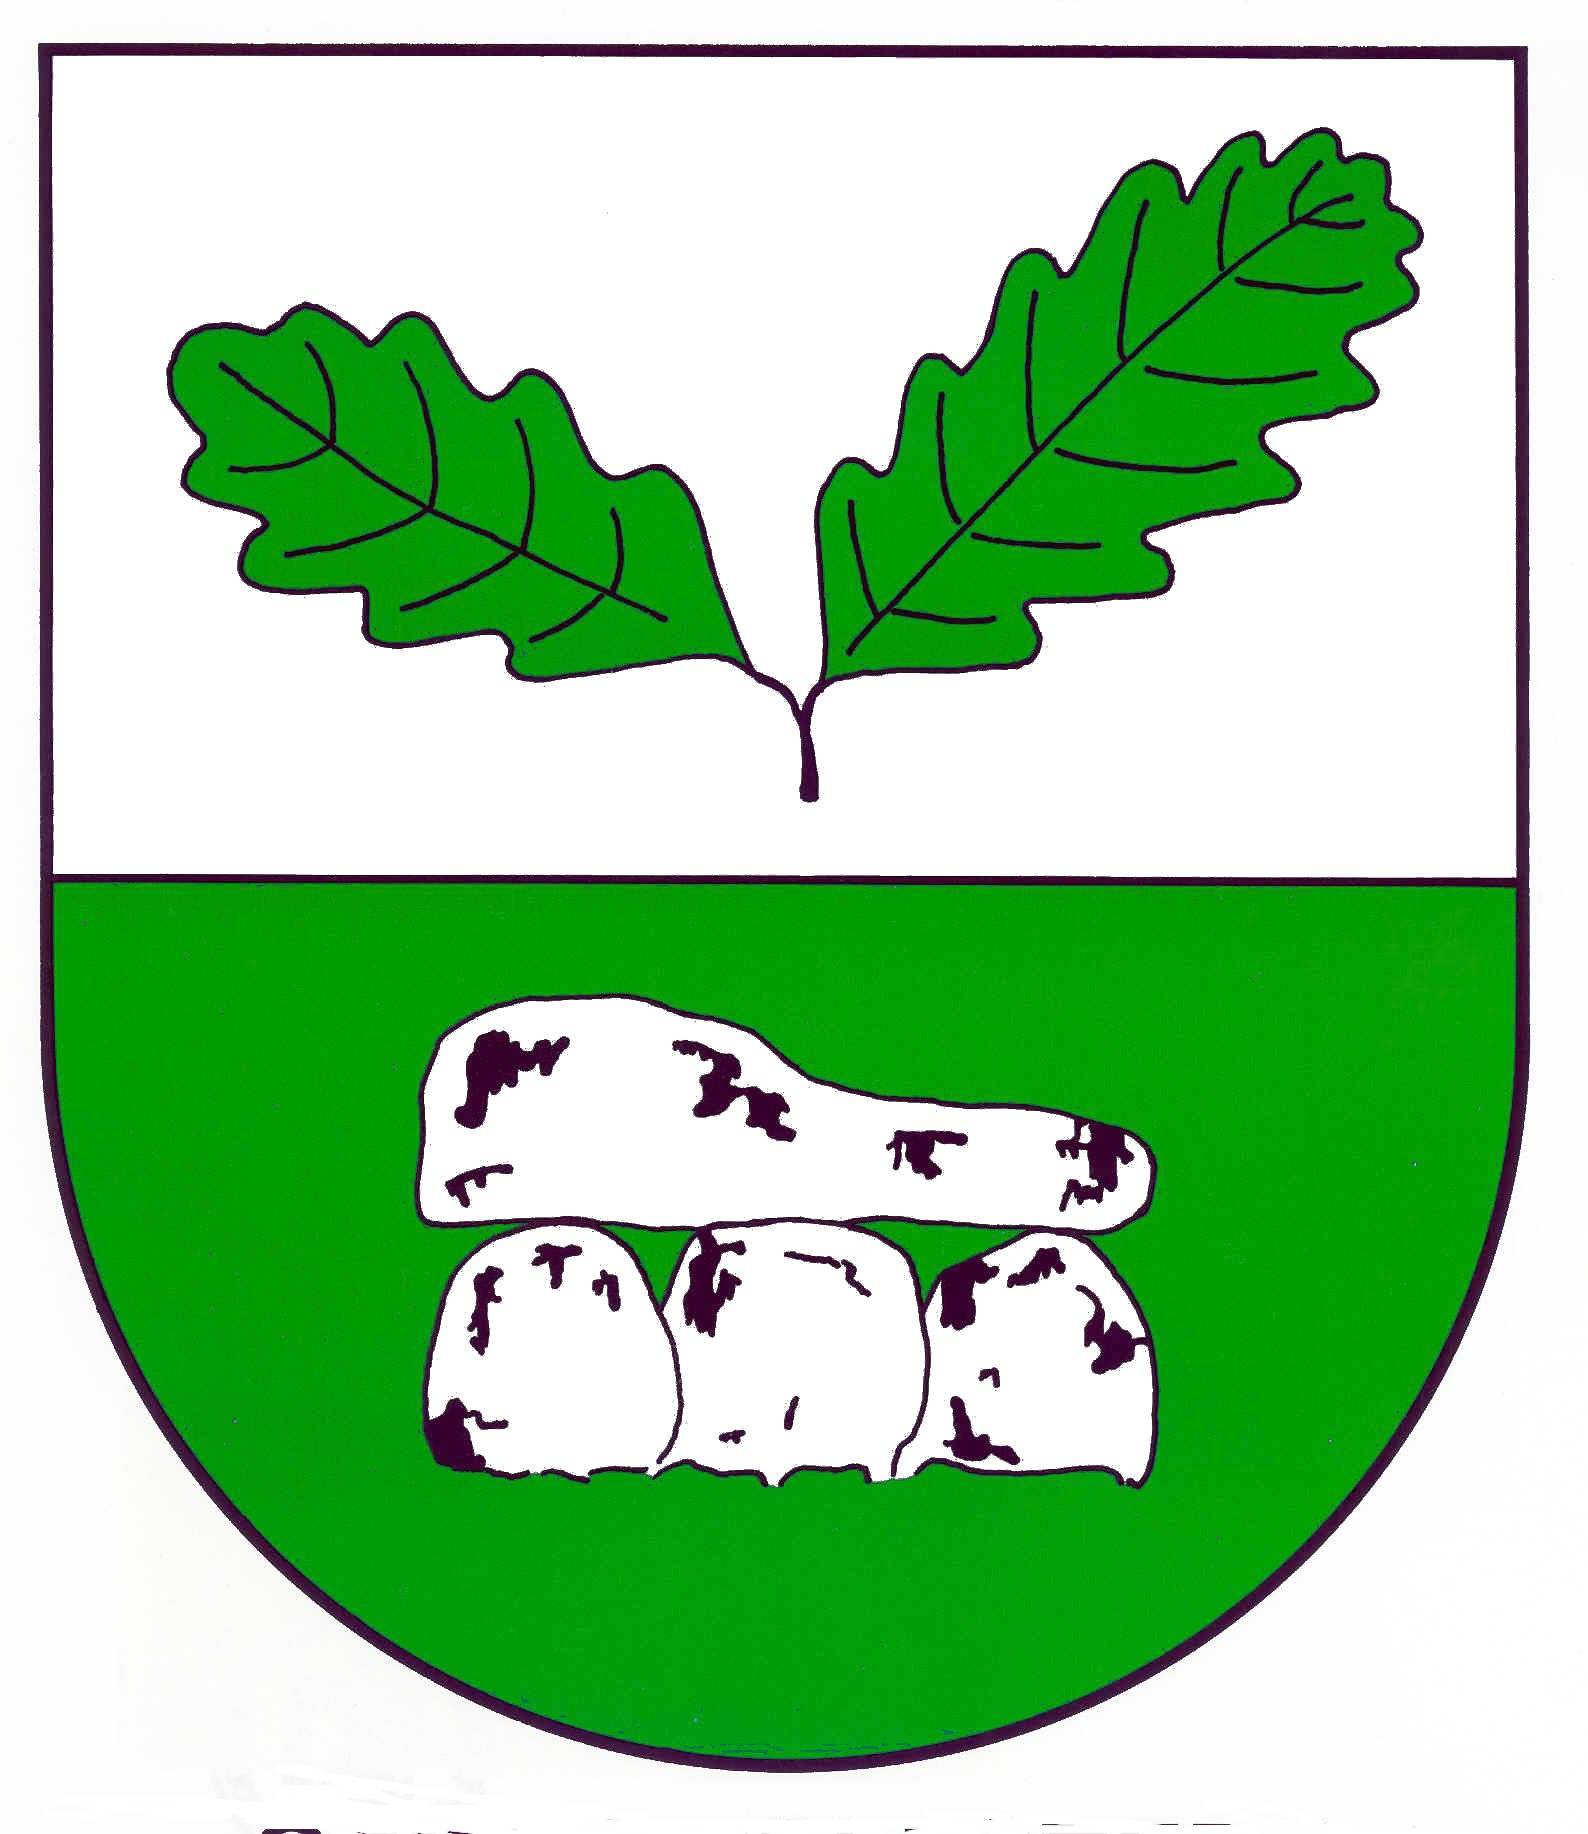 Wappen Gemeinde Groß Vollstedt, Kreis Rendsburg-Eckernförde